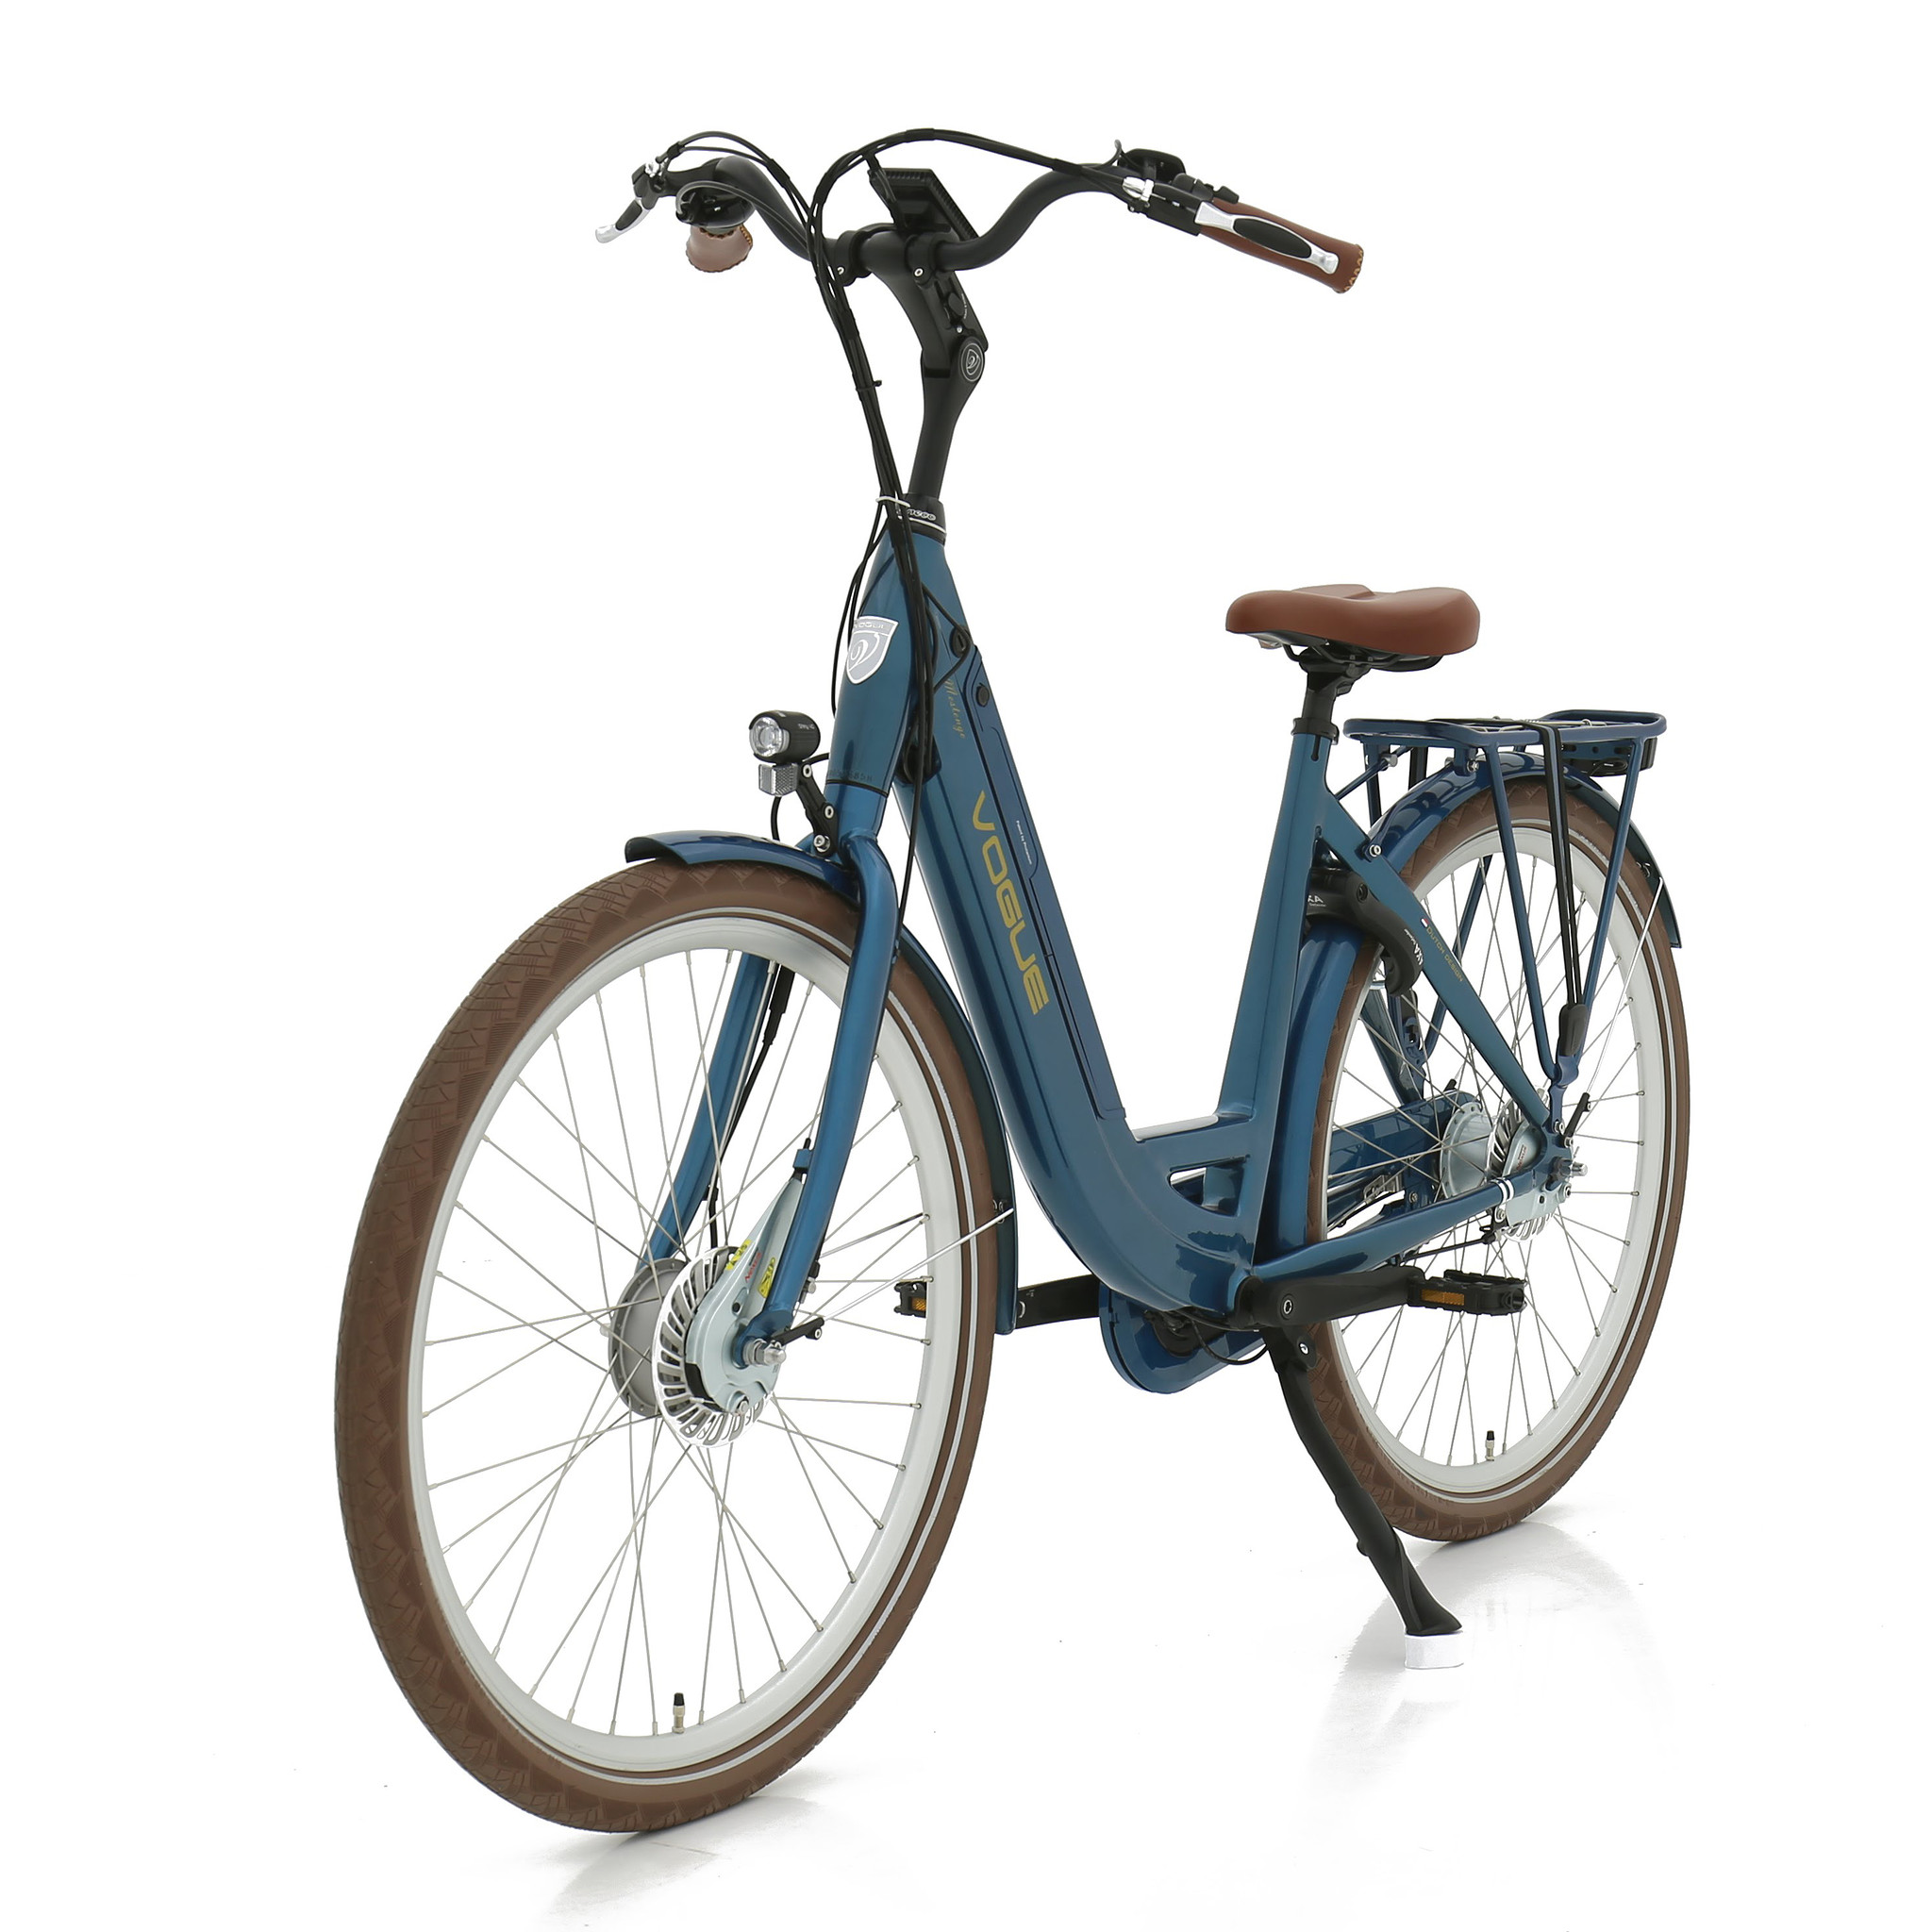 Knorrig Naleving van ik zal sterk zijn Vogue Elektrische fiets Mestengo Dames 51 cm Blauw 468 Wh Blauw -  FietsenMagazijn